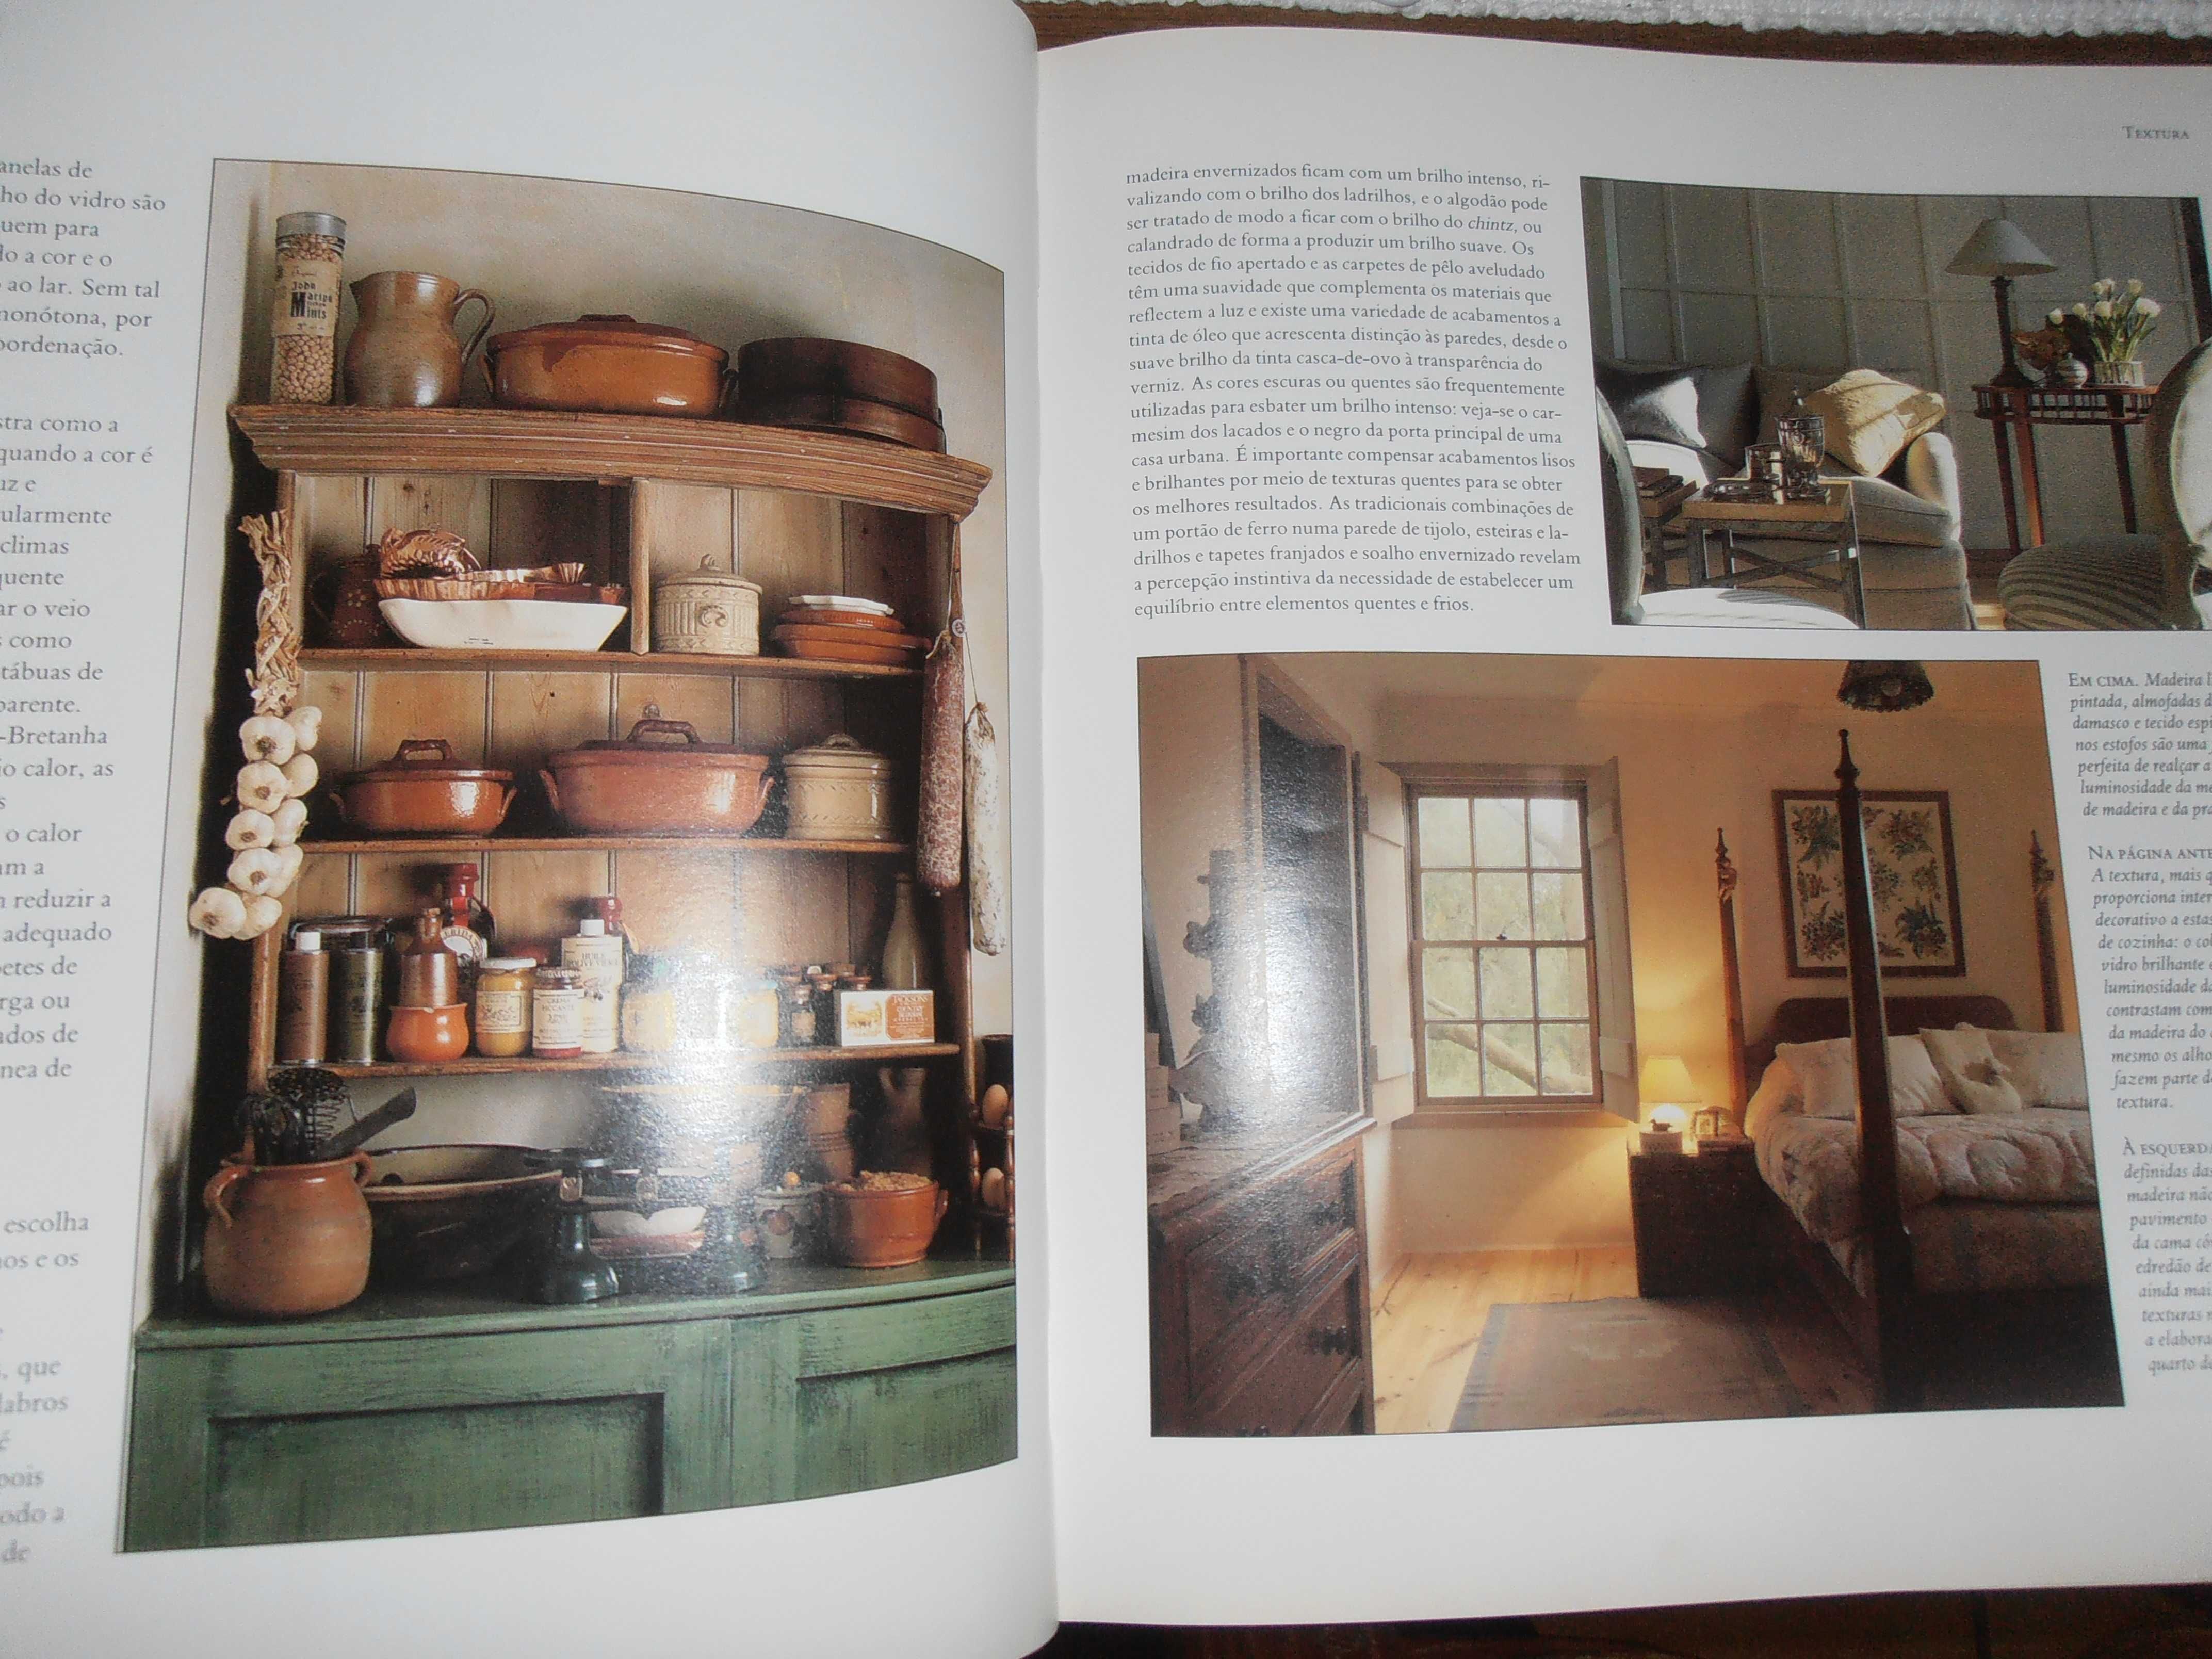 laura ashley-o grande livro decoração lar,1ºed.1990